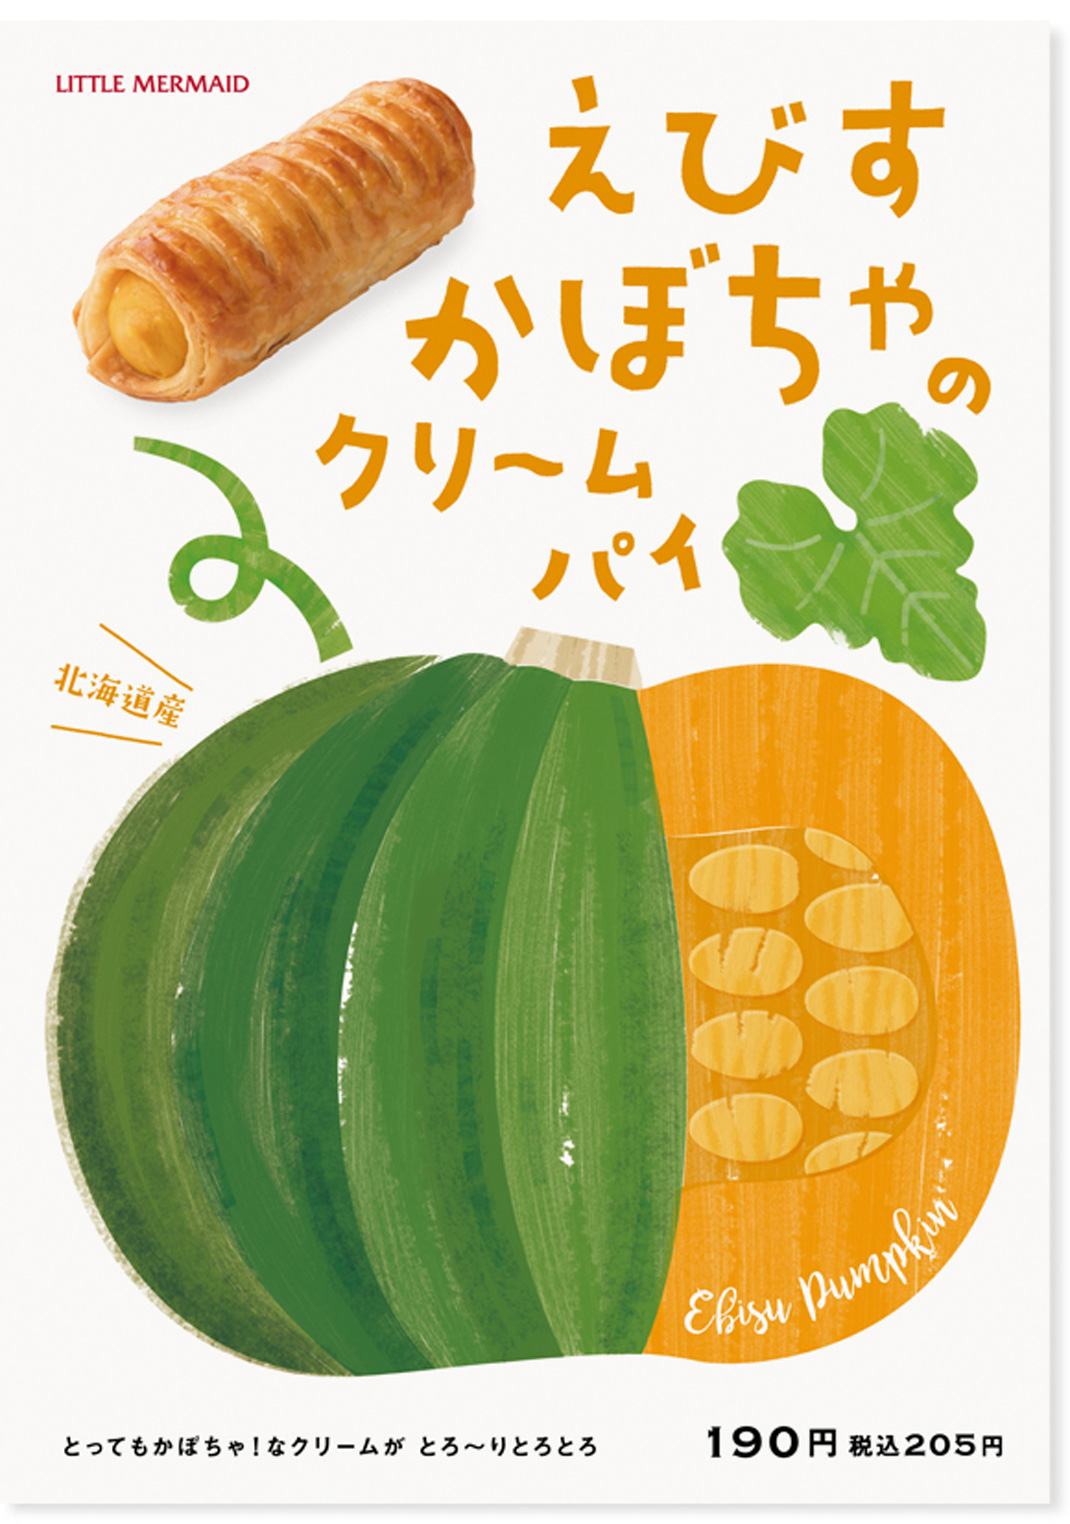 餐饮海报设计 日本 日本 广告设计 海报设计 插图 推广设计 logo设计 vi设计 空间设计